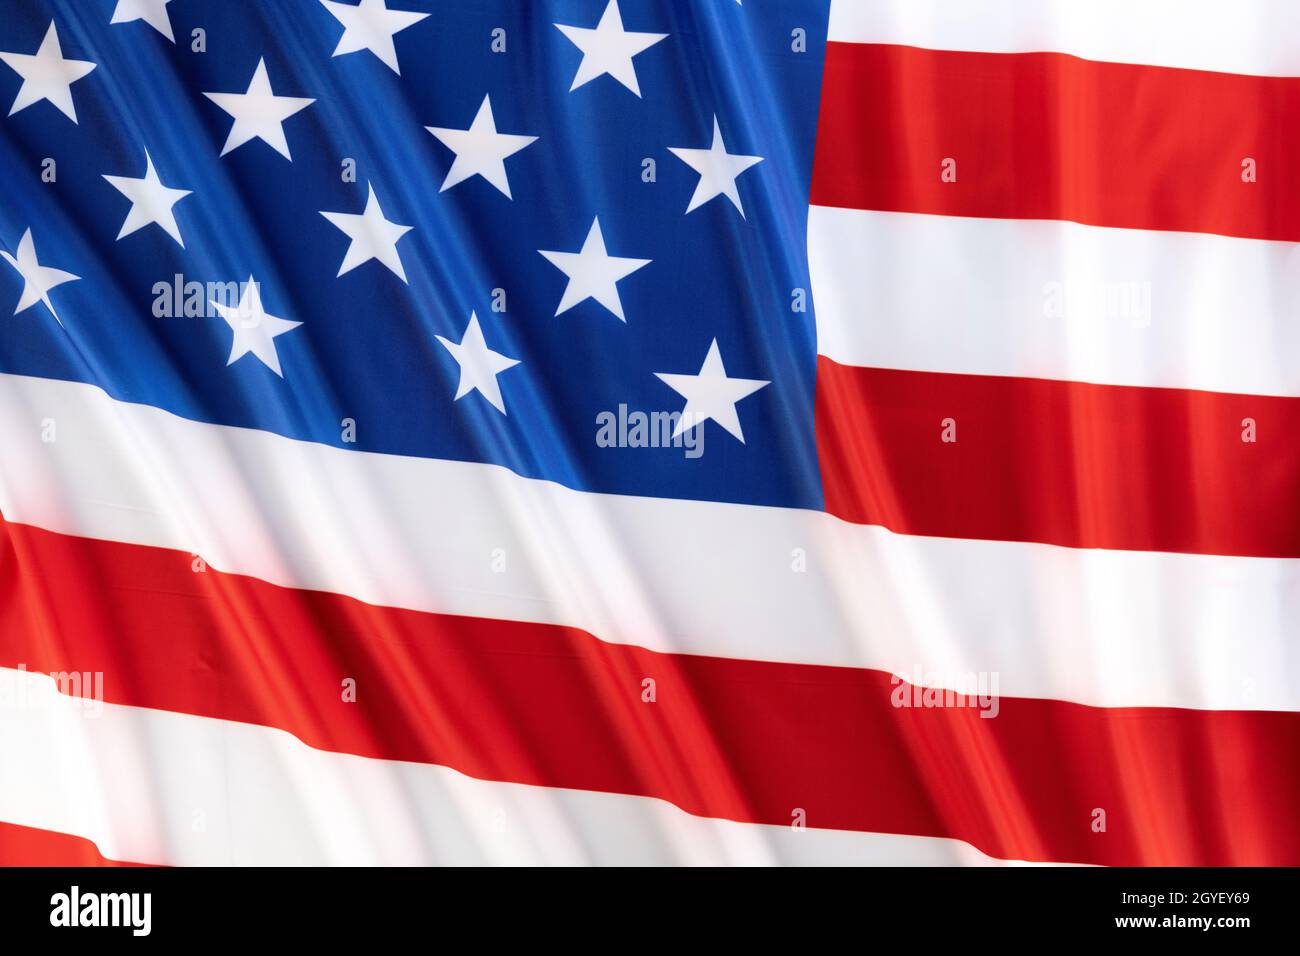 Old Glory, la bandiera nazionale americana, un simbolo di libertà e prosperità con i suoi vivaci colori rosso, bianco e blu. Foto Stock